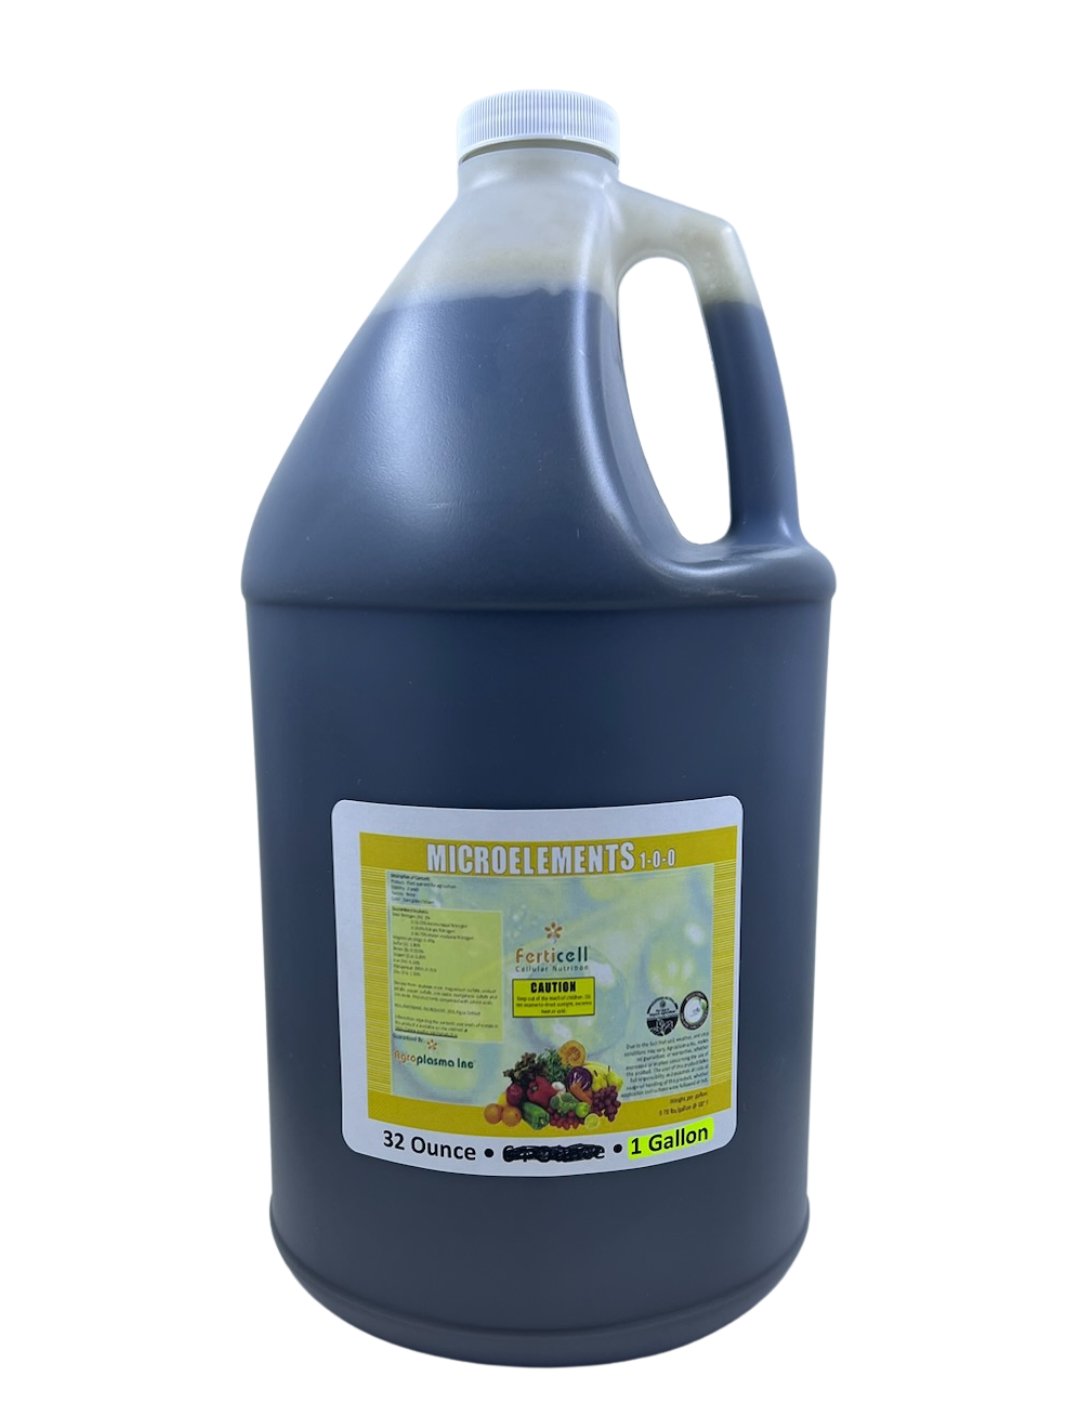 Ferticell Microelements 1-0-0 Organic Fertilizer in 1 Gallon Bottle